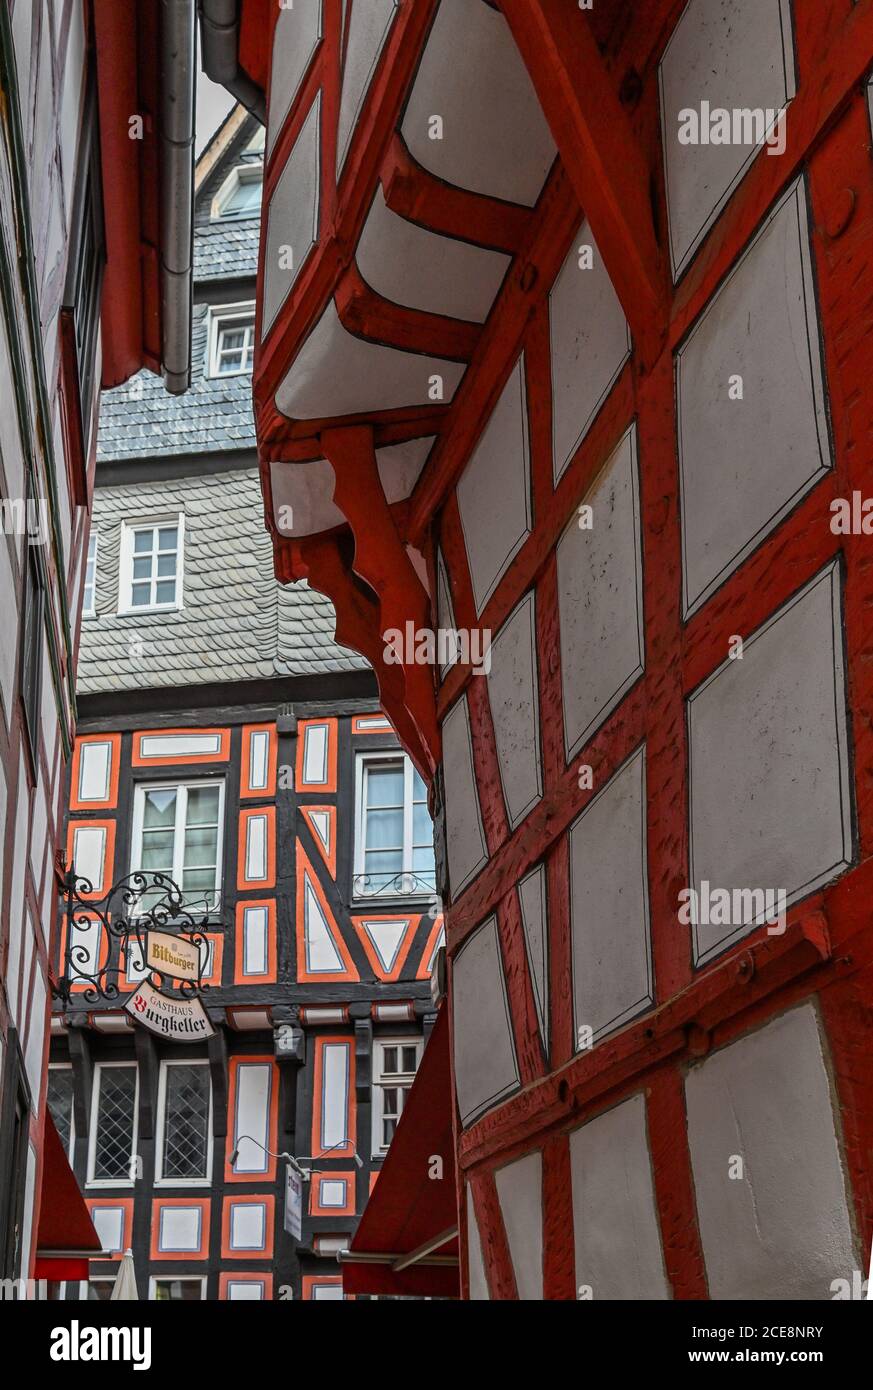 Limburg Altstadt, Hesse, Germany Stock Photo